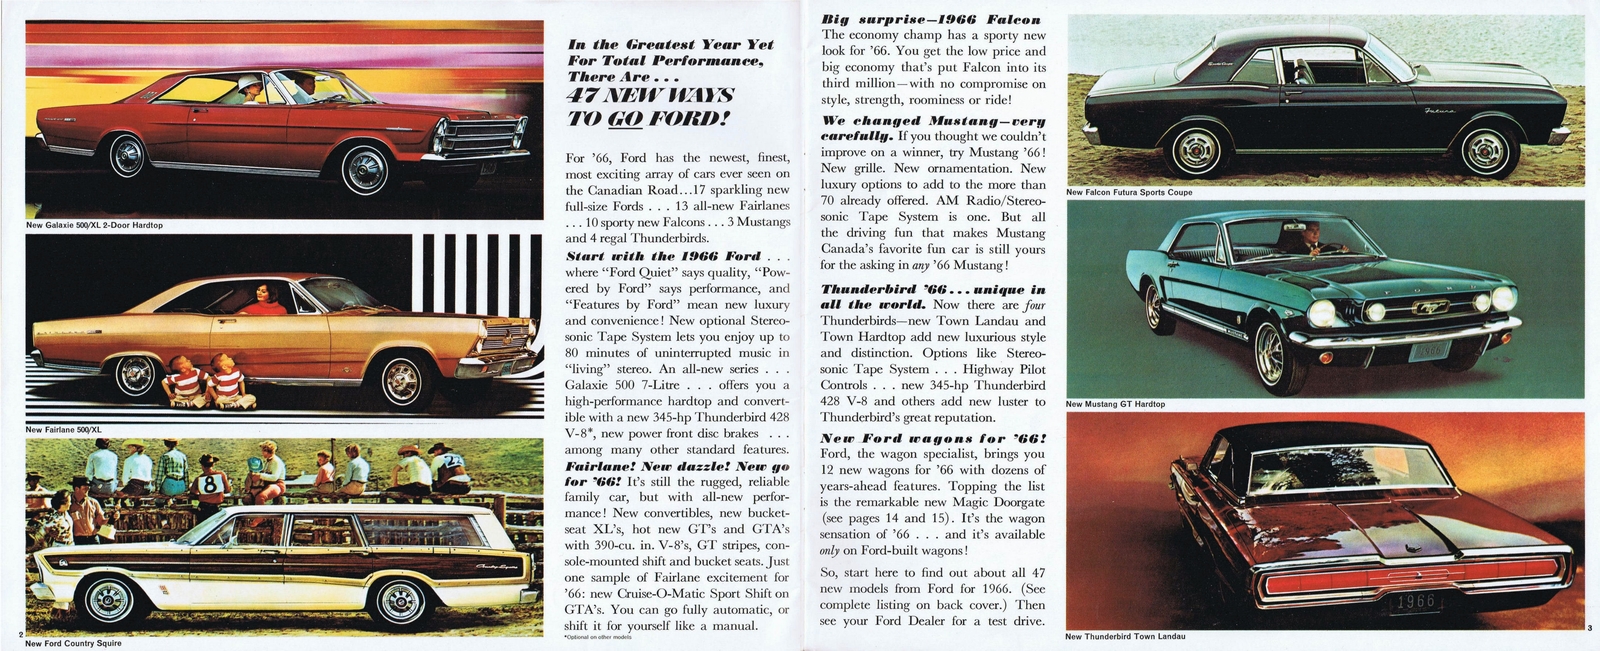 n_1966 Ford Full Line (Cdn) 02-03.jpg